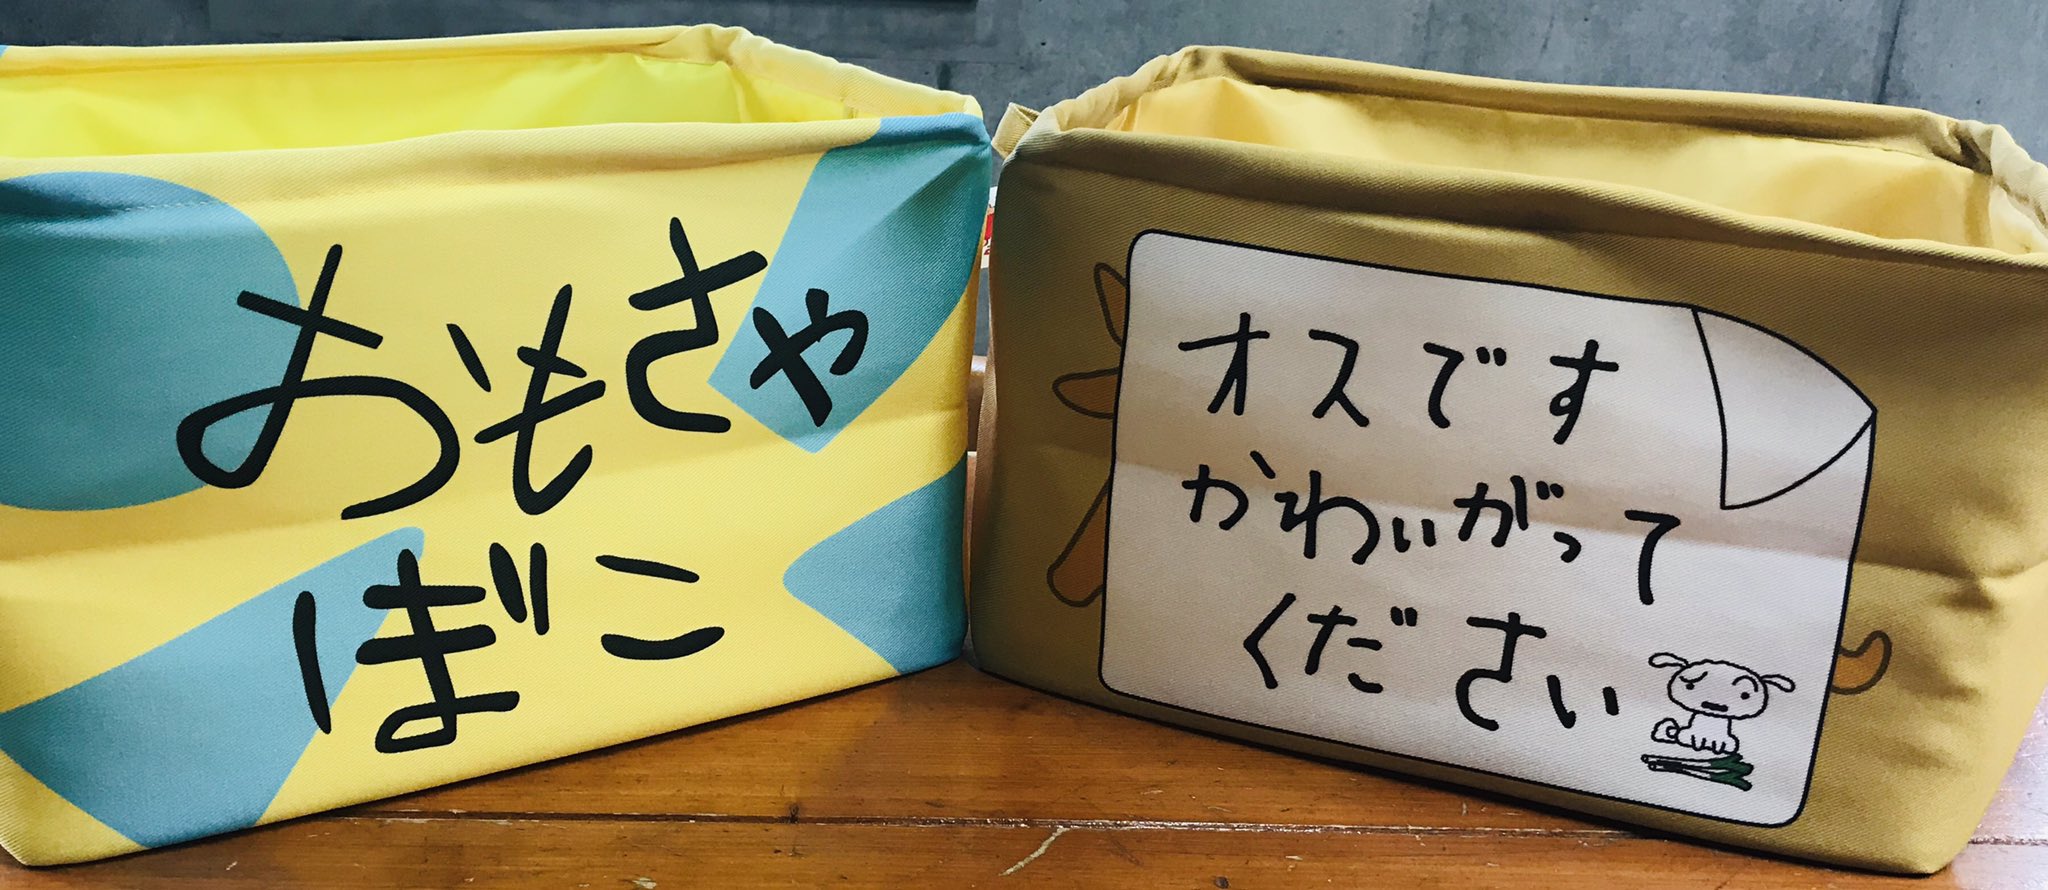 公式 クレヨンしんちゃんオフィシャルショップ アクションデパート東京駅店 on twitter お知らせ ご好評により完売しておりましたストレージボックスがリニューアルして再登場致します しんちゃんのおもちゃ箱と シロの段ボールを再現した ファンの方にも